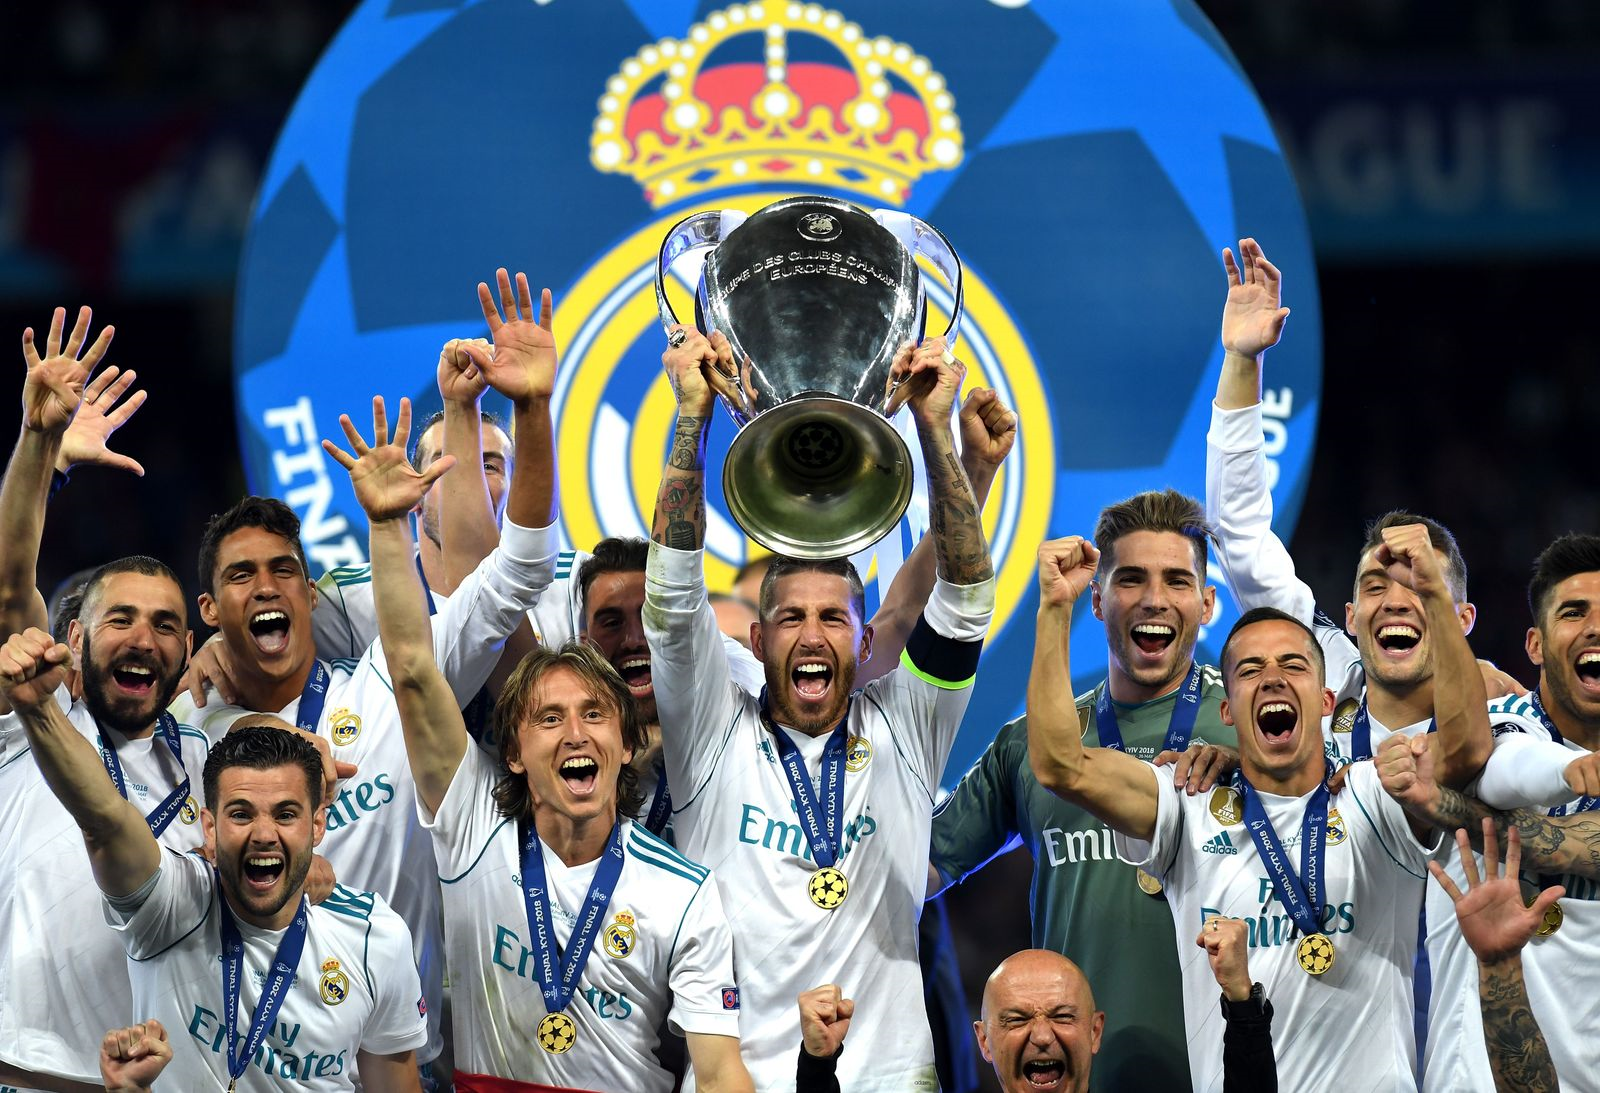 Лига чемпионов сайт. Реал Мадрид победитель Лиги чемпионов. Реал Мадрид чемпион Лиги чемпионов. Реал Мадрид чемпион Лиги чемпионов 2018. Реал Мадрид победитель Лиги чемпионов 2017.